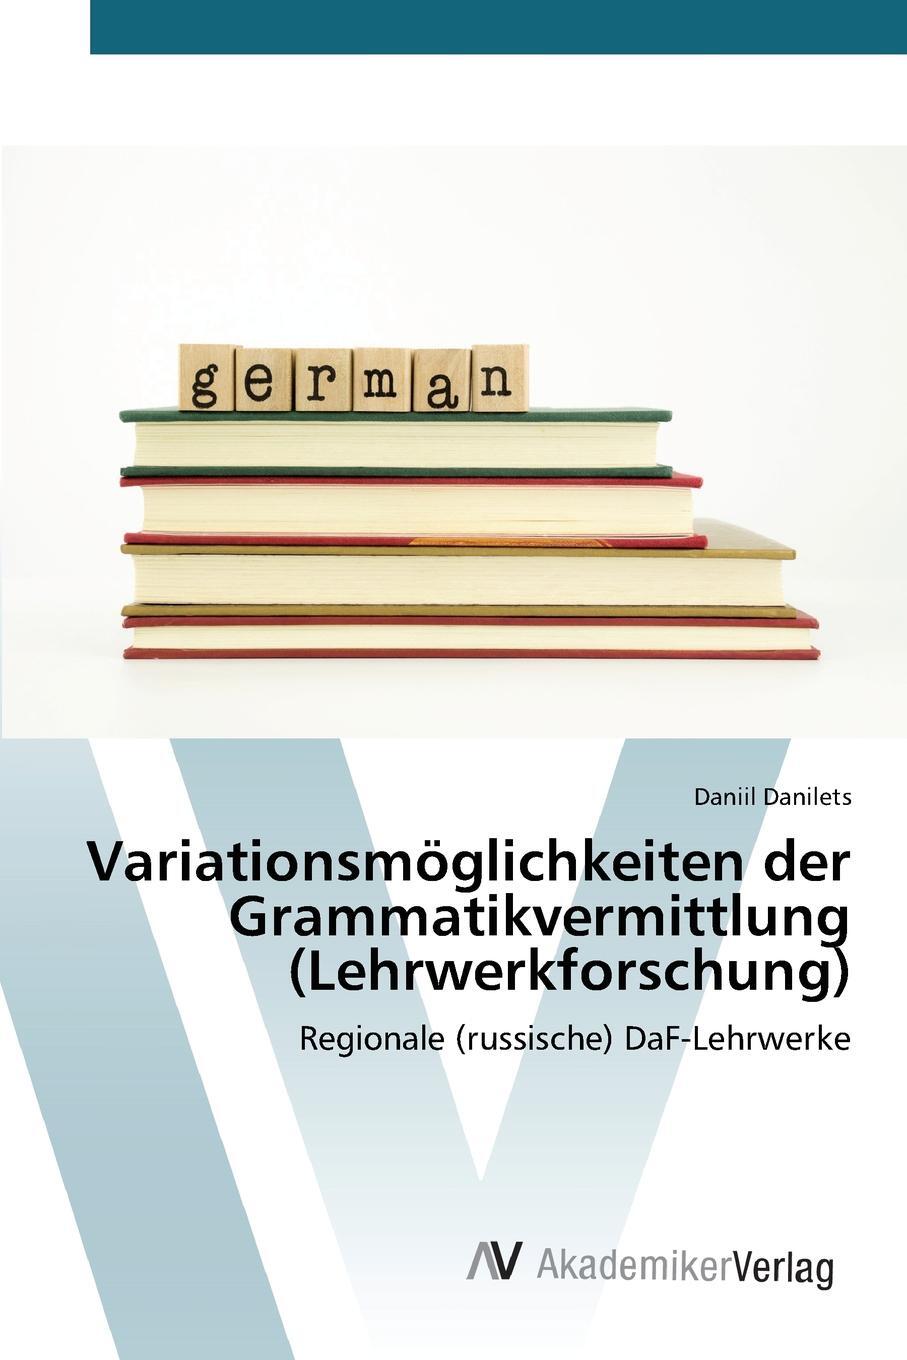 Variationsmoglichkeiten der Grammatikvermittlung (Lehrwerkforschung)